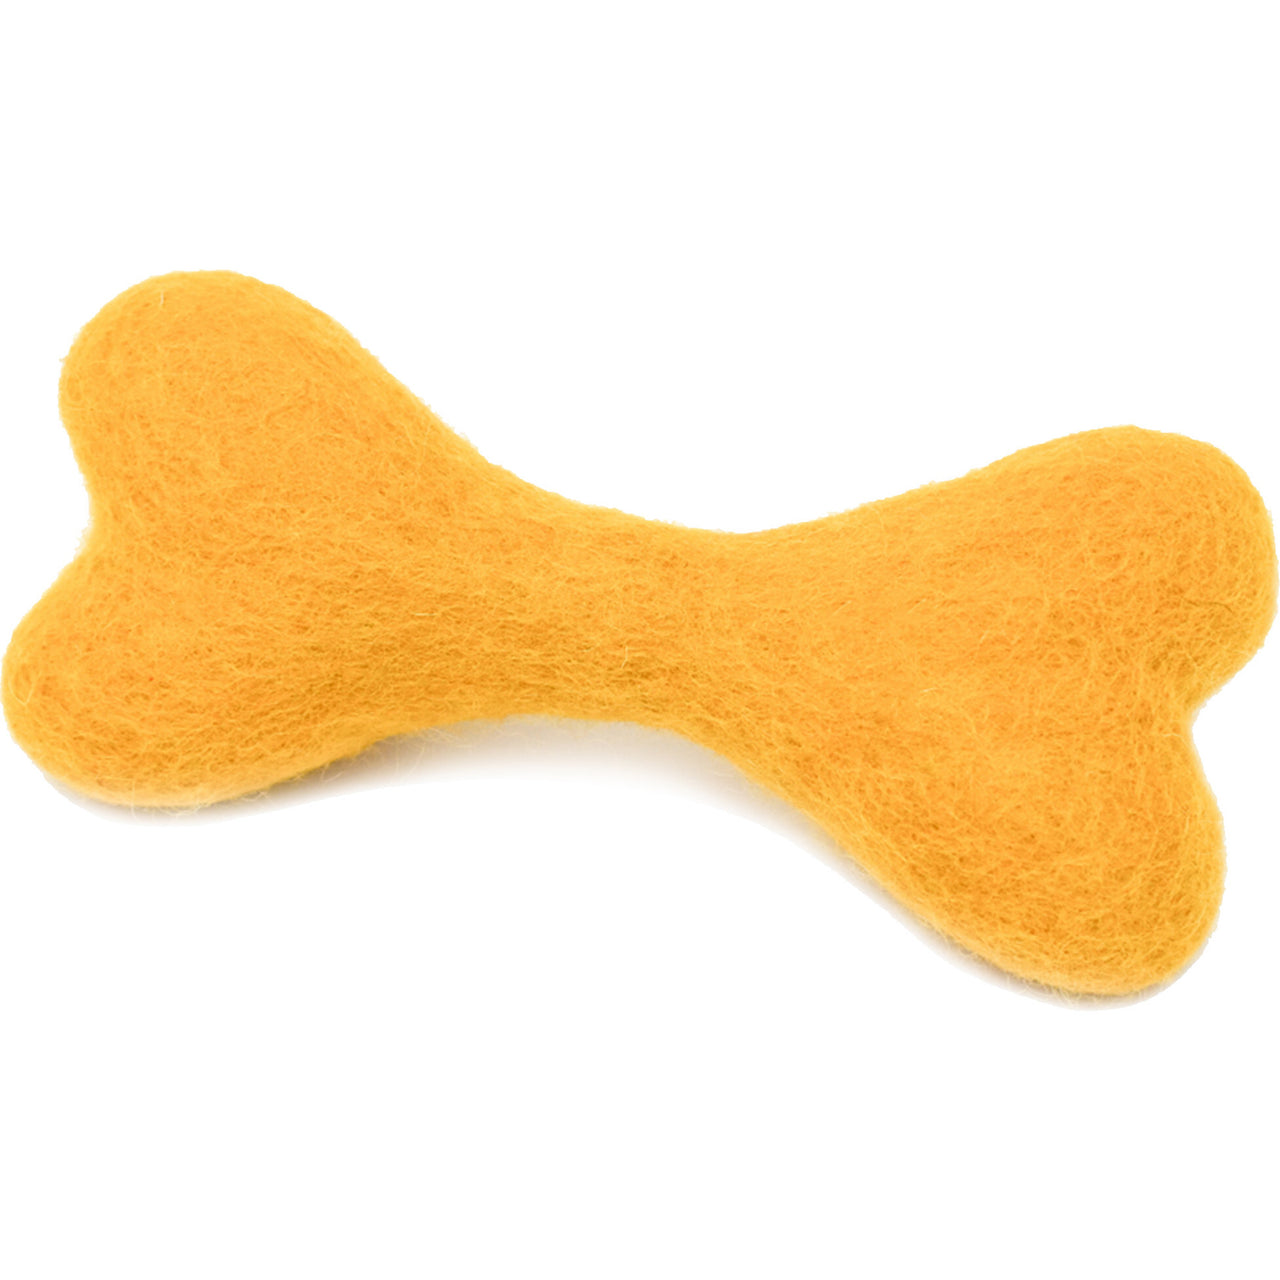 WOOLBONES - Marigold - Dog Toy